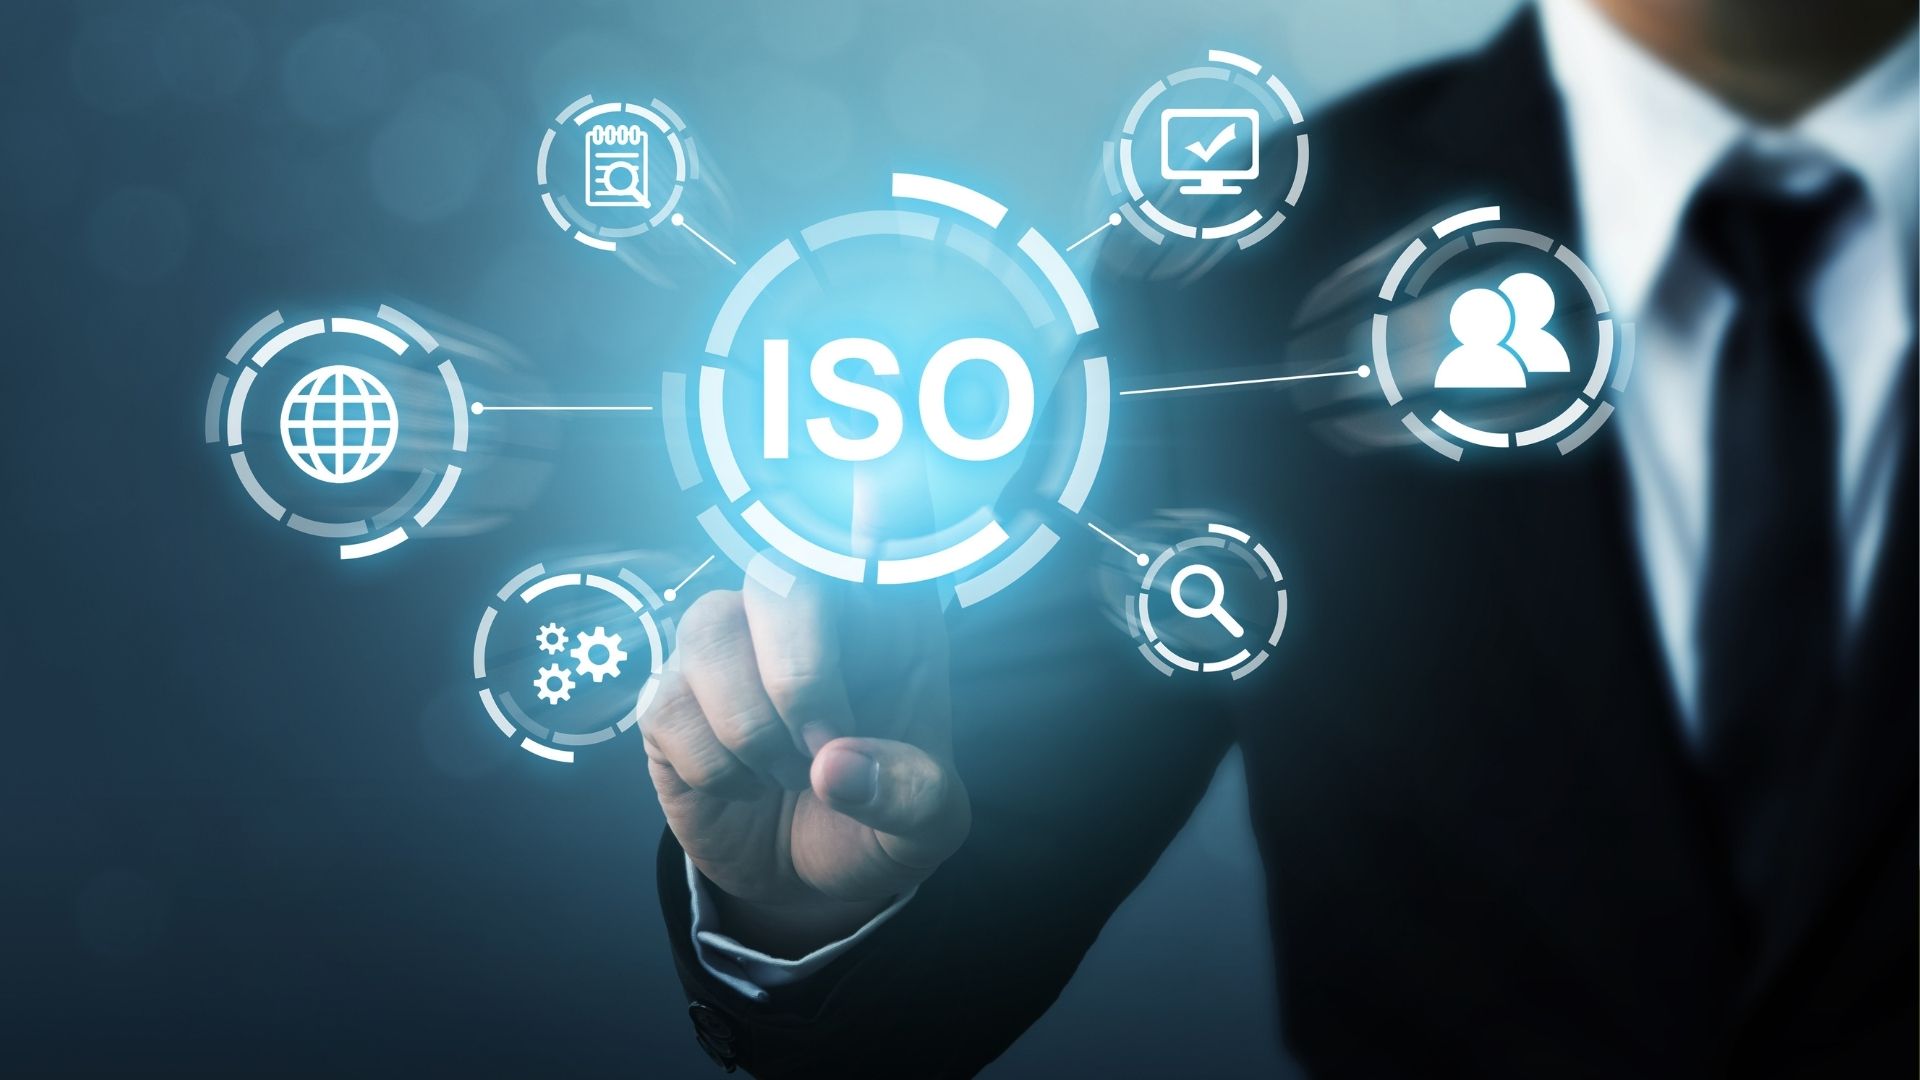 Tiêu chuẩn ISO 9001 ngành sản xuất